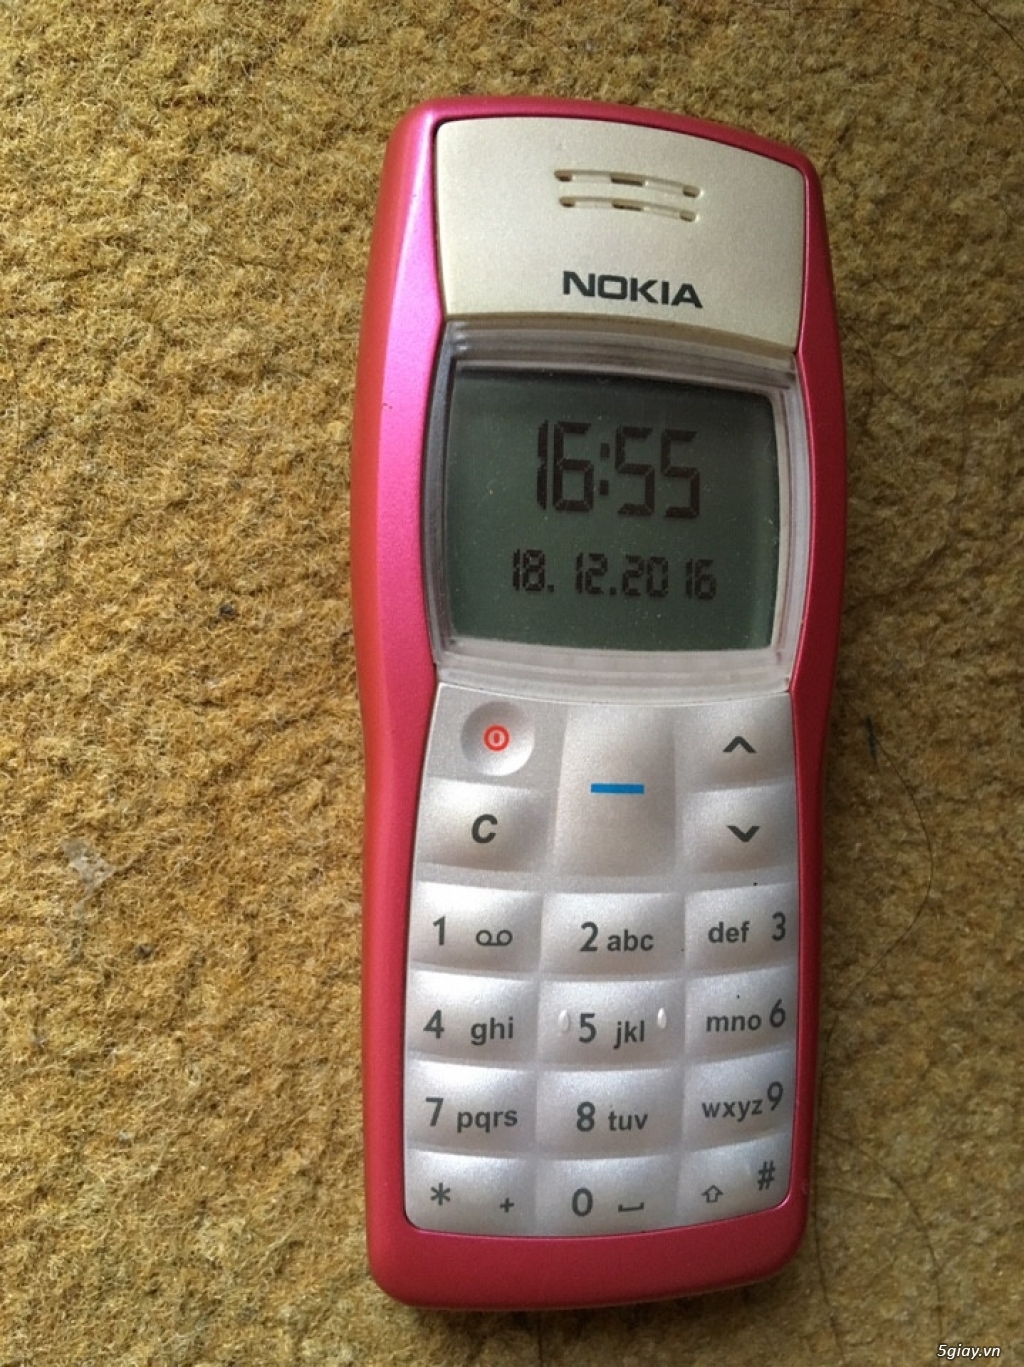 Nokia 1100 all zin chính hãng made in Korea CỰC HIẾM ! - 1